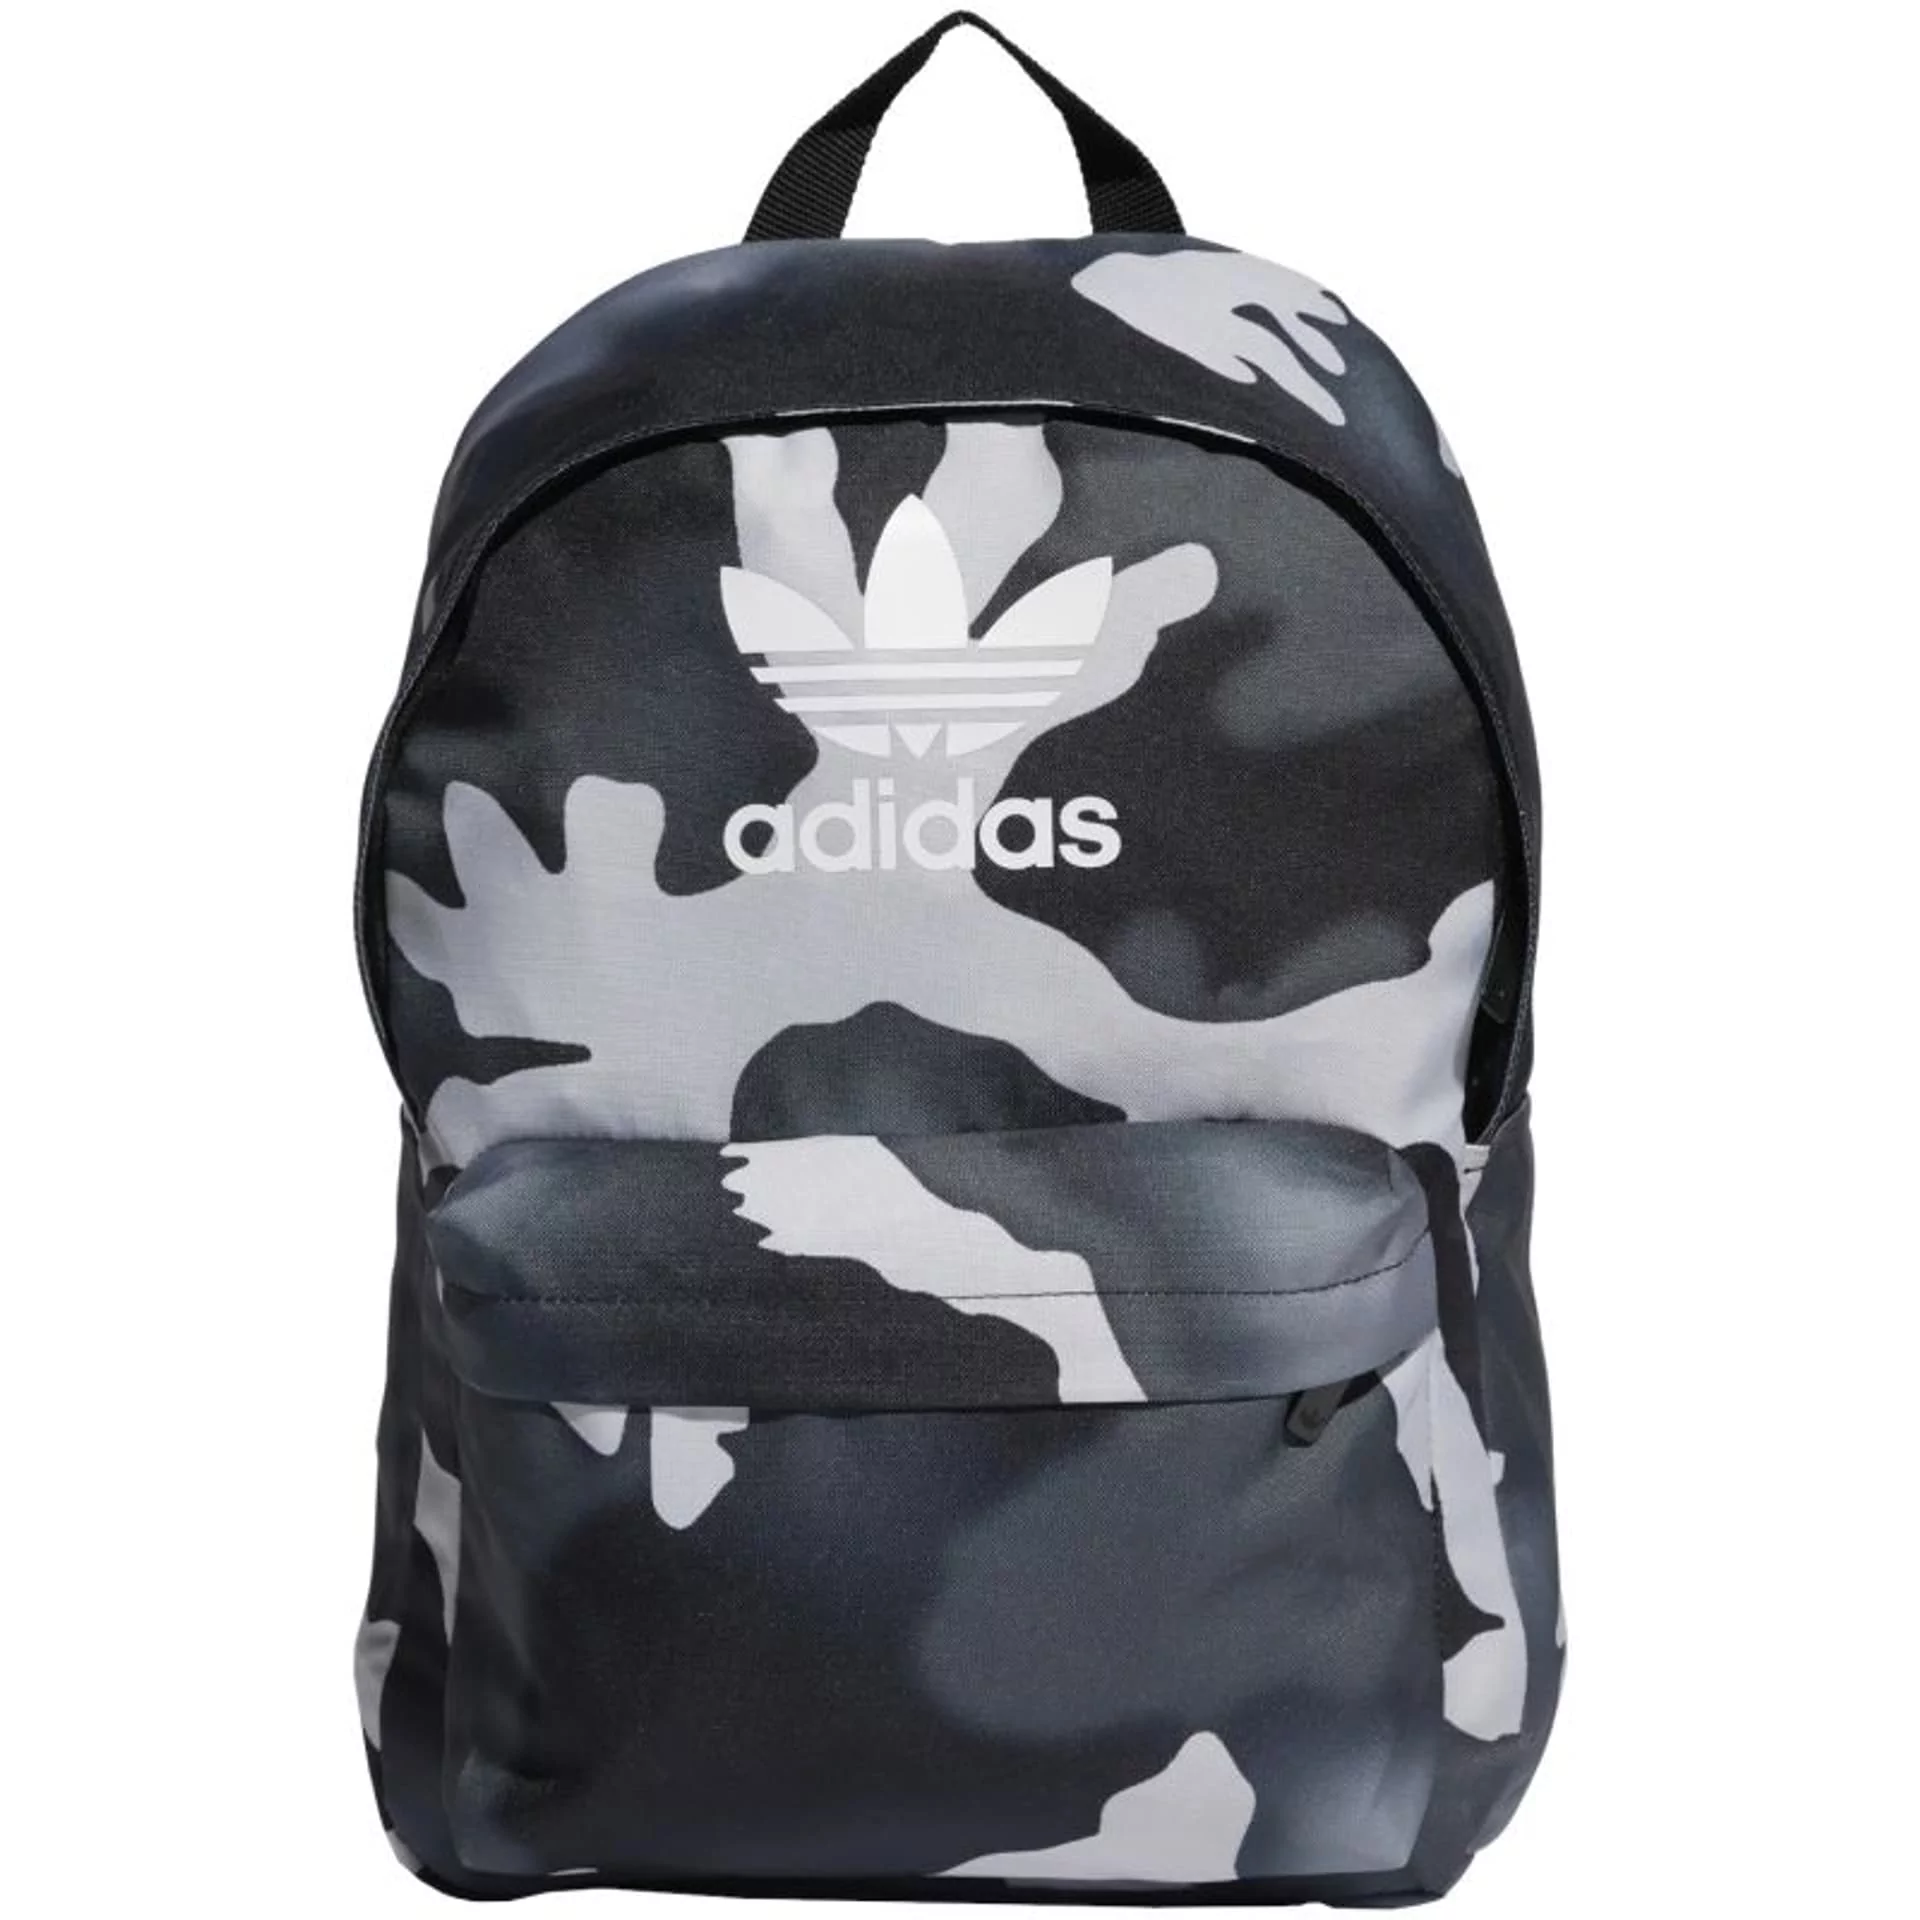 Plecak adidas Camo Classic Backpack HC95 (kolor Czarny. Szary/Srebrny,  rozmiar One size) - Ceny i opinie na Skapiec.pl